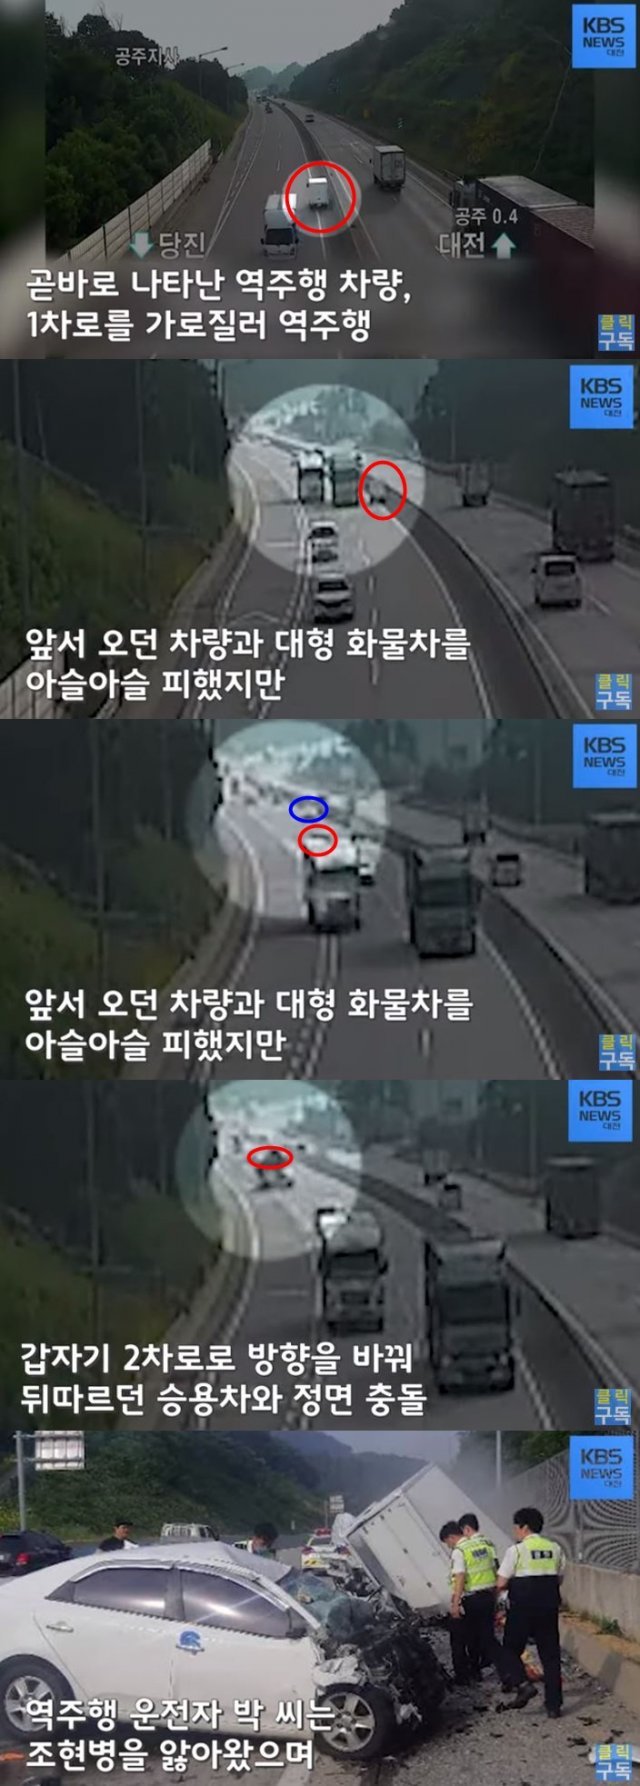 KBS 대전 유튜브 영상 캡처.